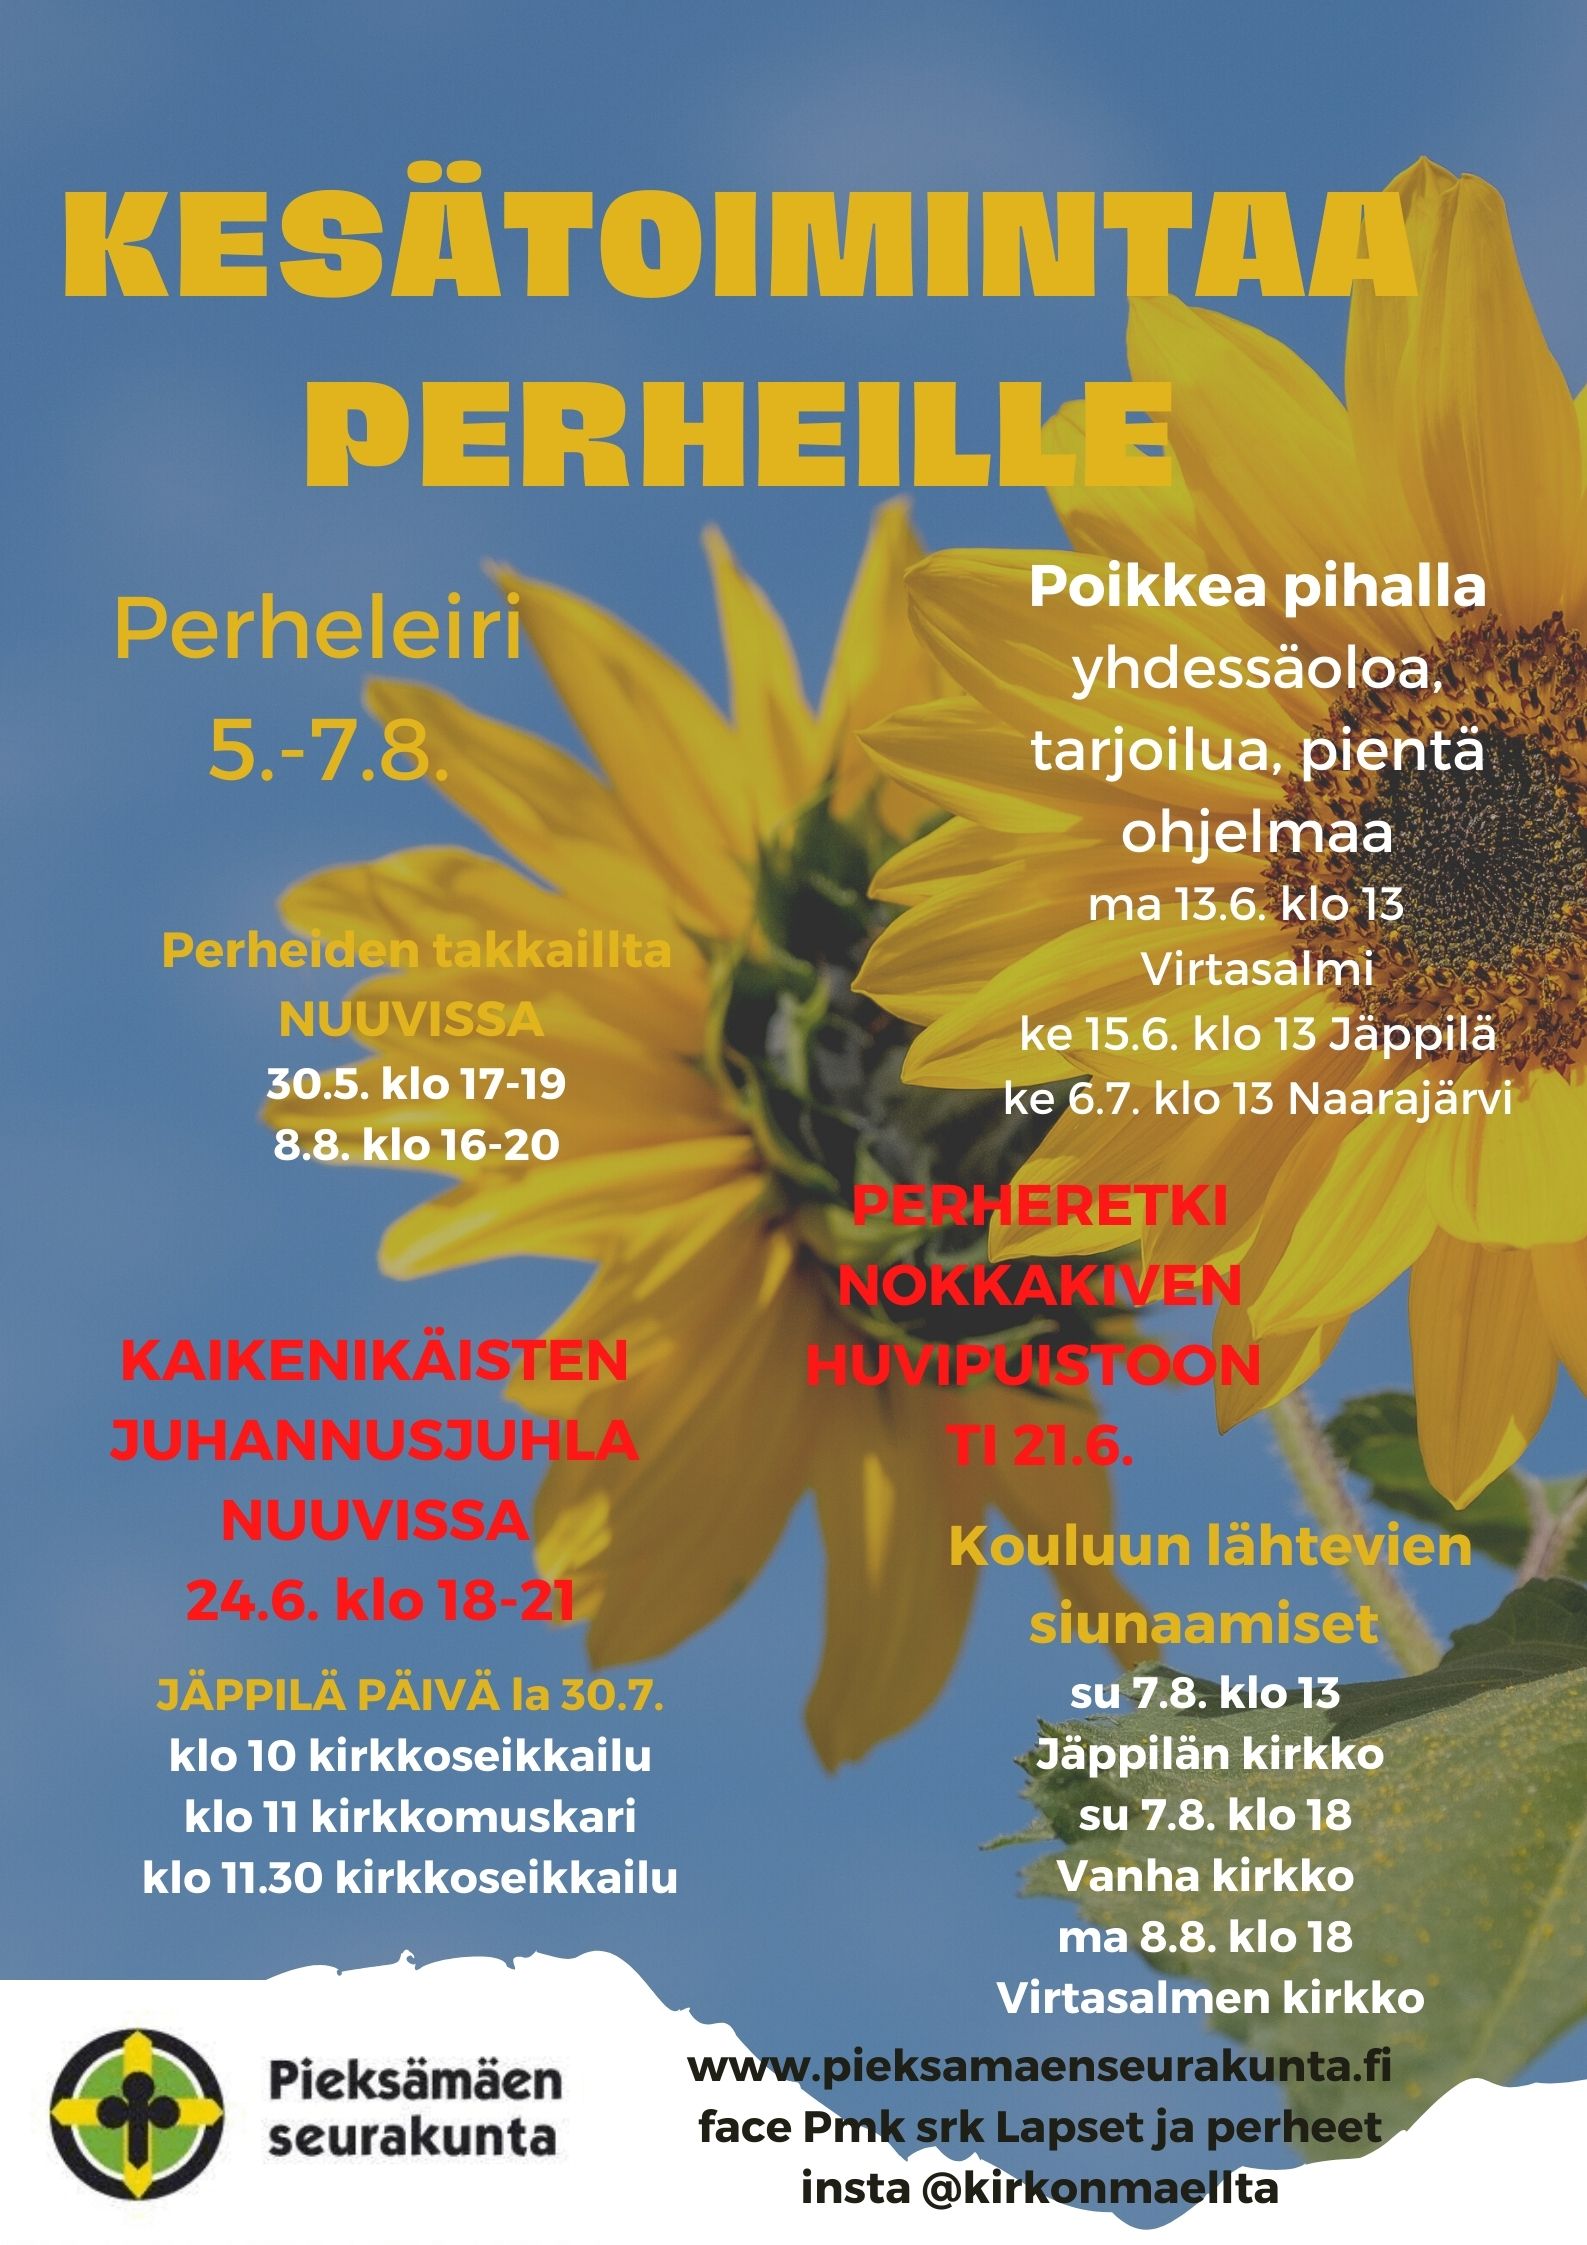 kuvana auringonkukat ja isninne taivas, tekstinä kesätoimintaa perheille